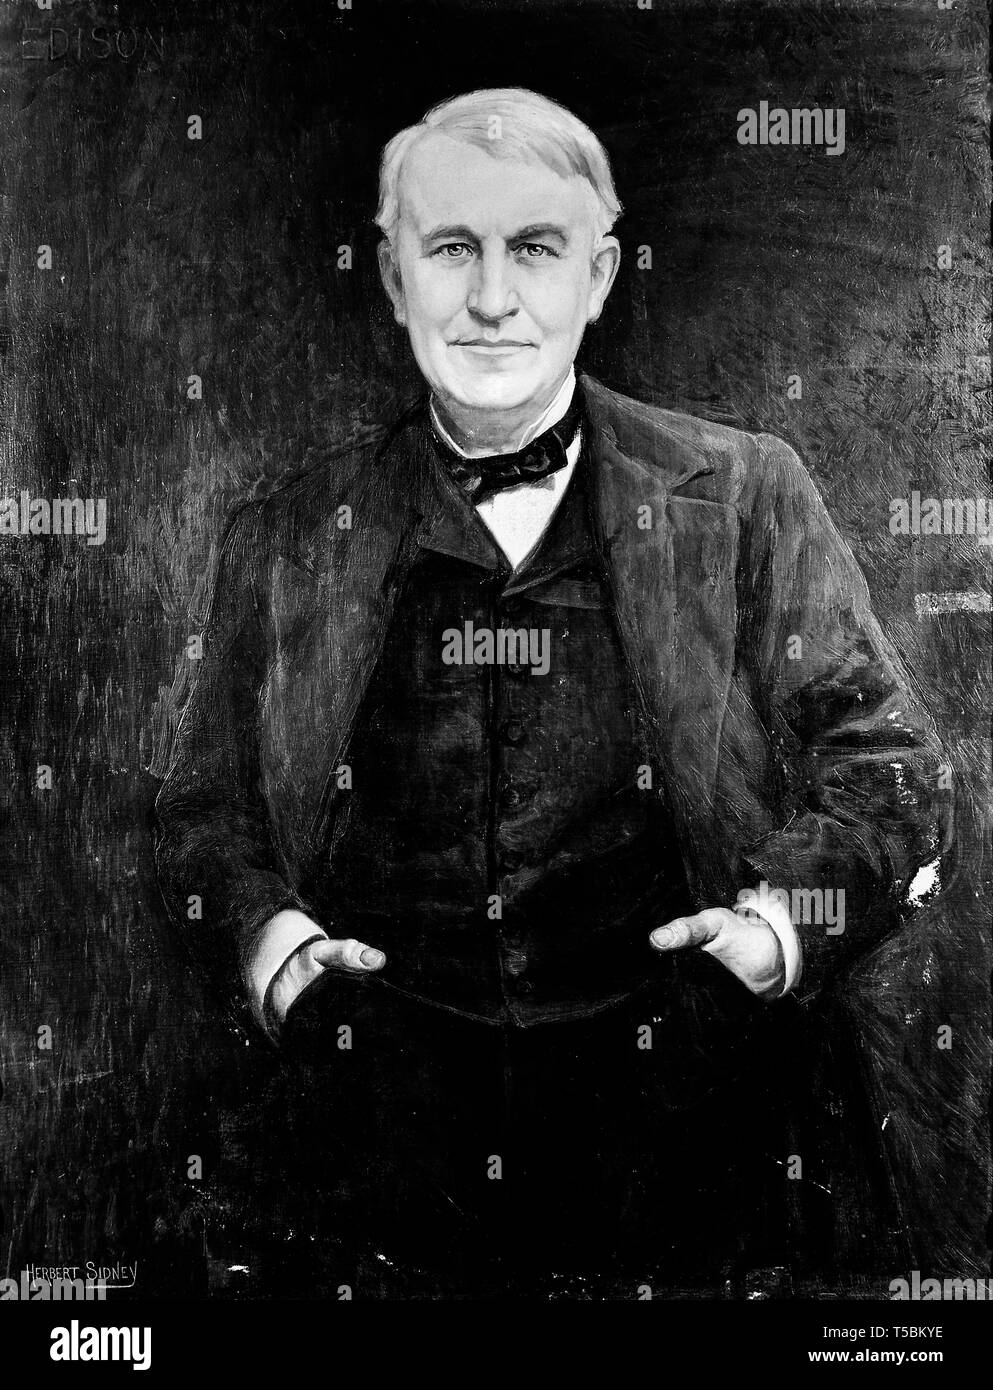 Thomas Edison (1847-1931), portrait par Herbert Sydney, 19e siècle Banque D'Images